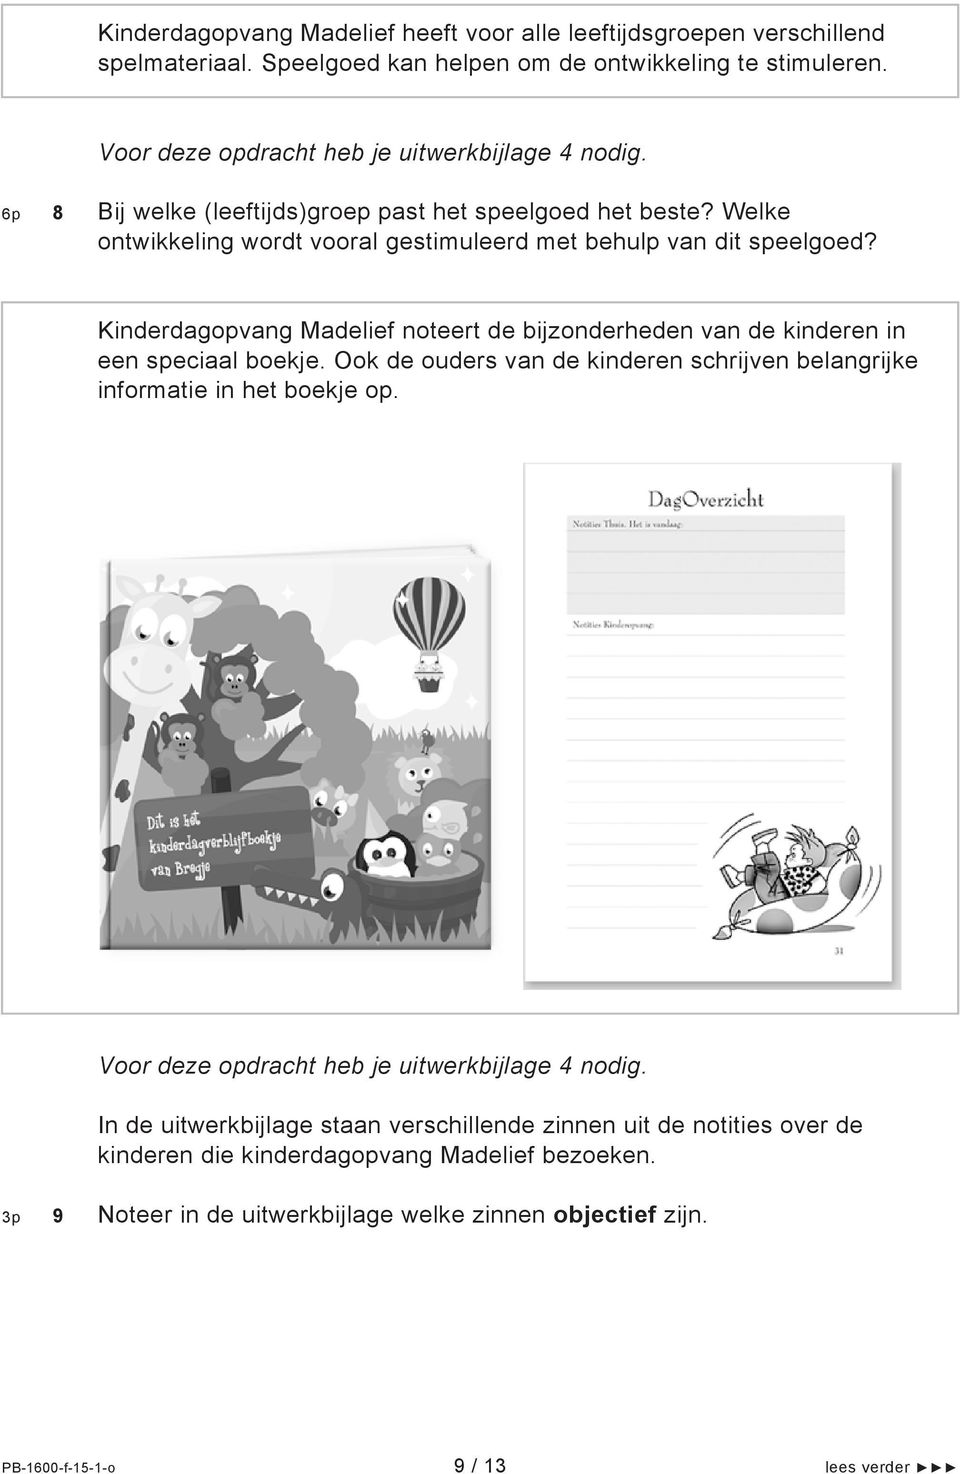 Kinderdagopvang Madelief noteert de bijzonderheden van de kinderen in een speciaal boekje. Ook de ouders van de kinderen schrijven belangrijke informatie in het boekje op.